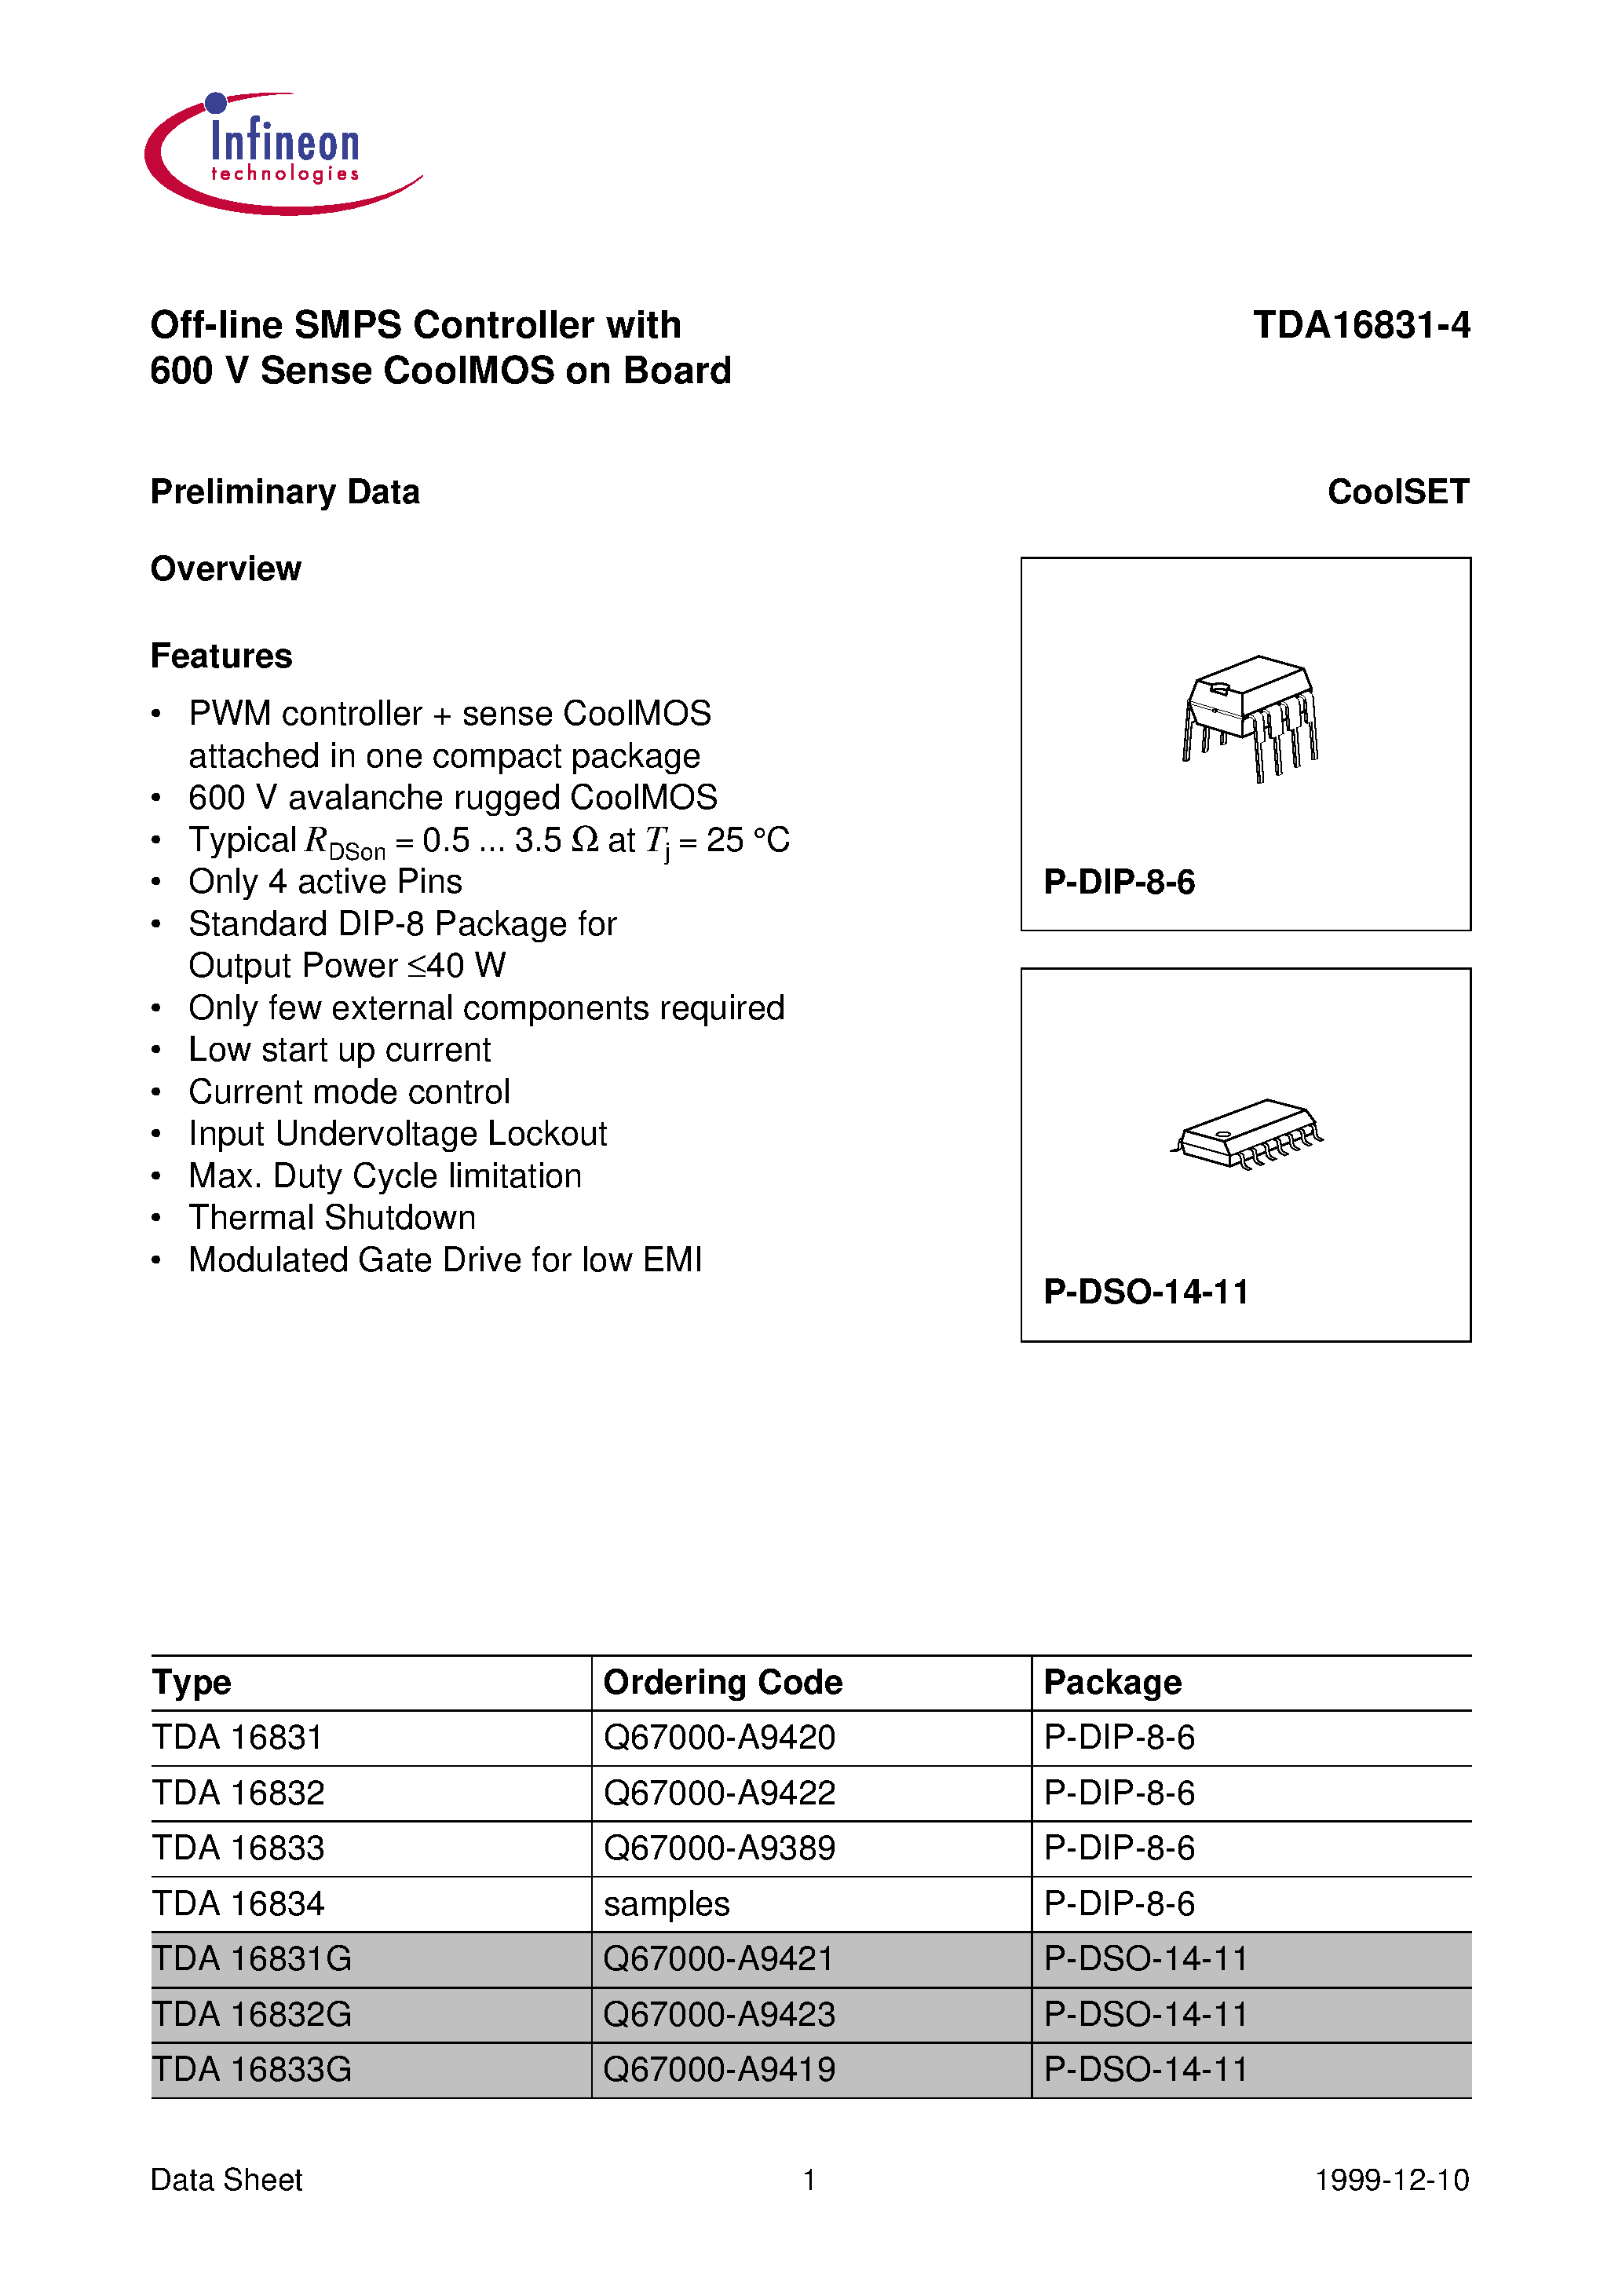 Datasheet TDA16831 - (TDA16831 - TDA16834) Off-line SMPS Controller with 600 V Sense CoolMOS on Board page 1